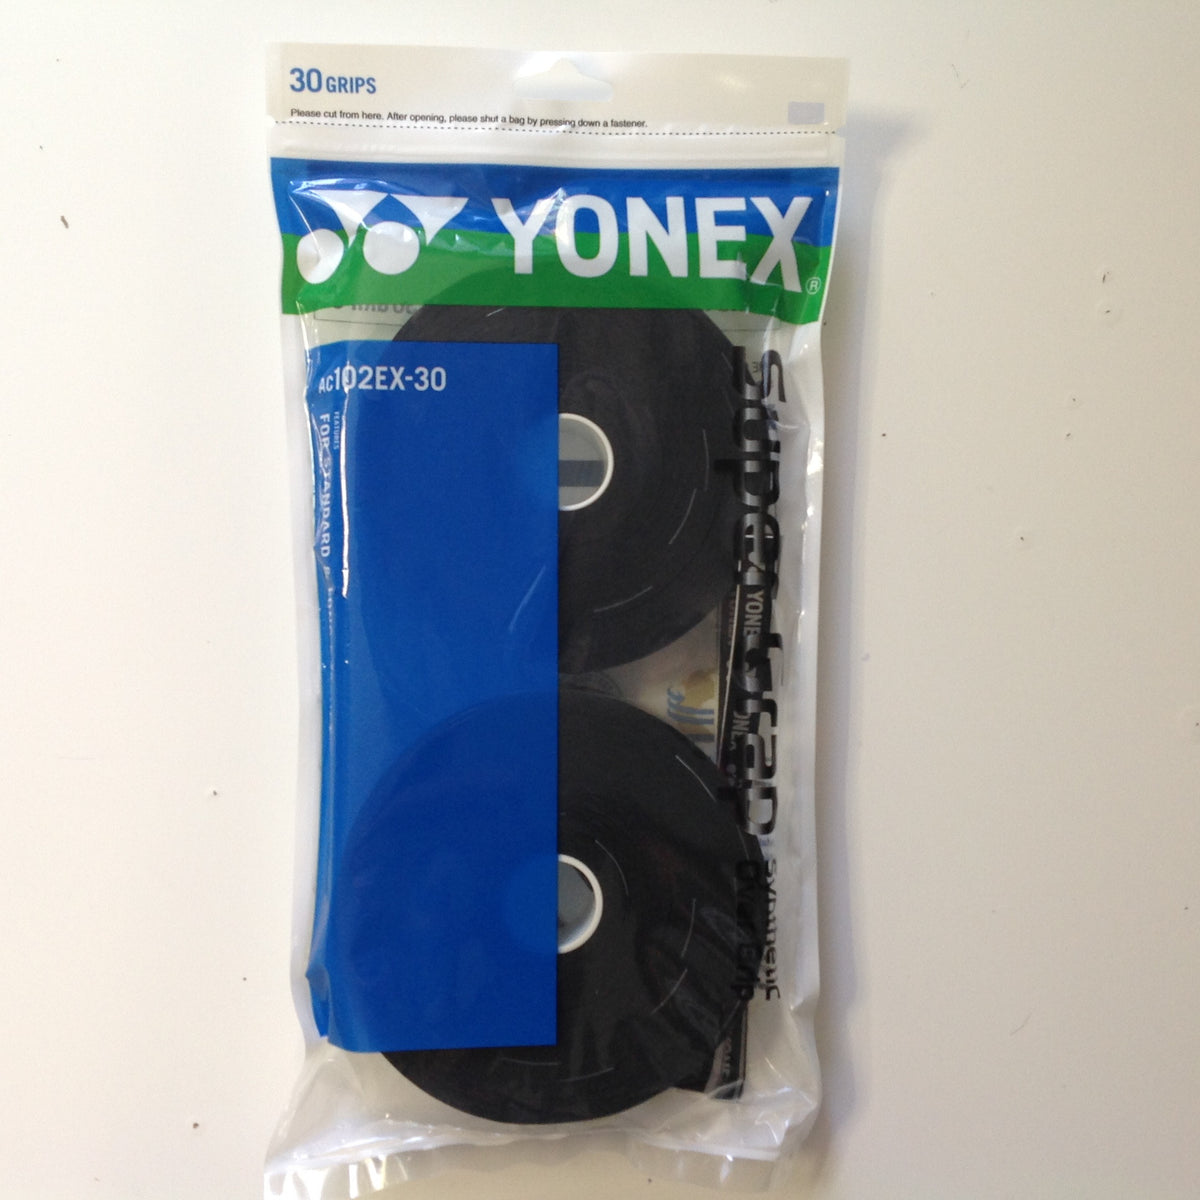 Yonex Super Grap AC102EX-30 (Black)